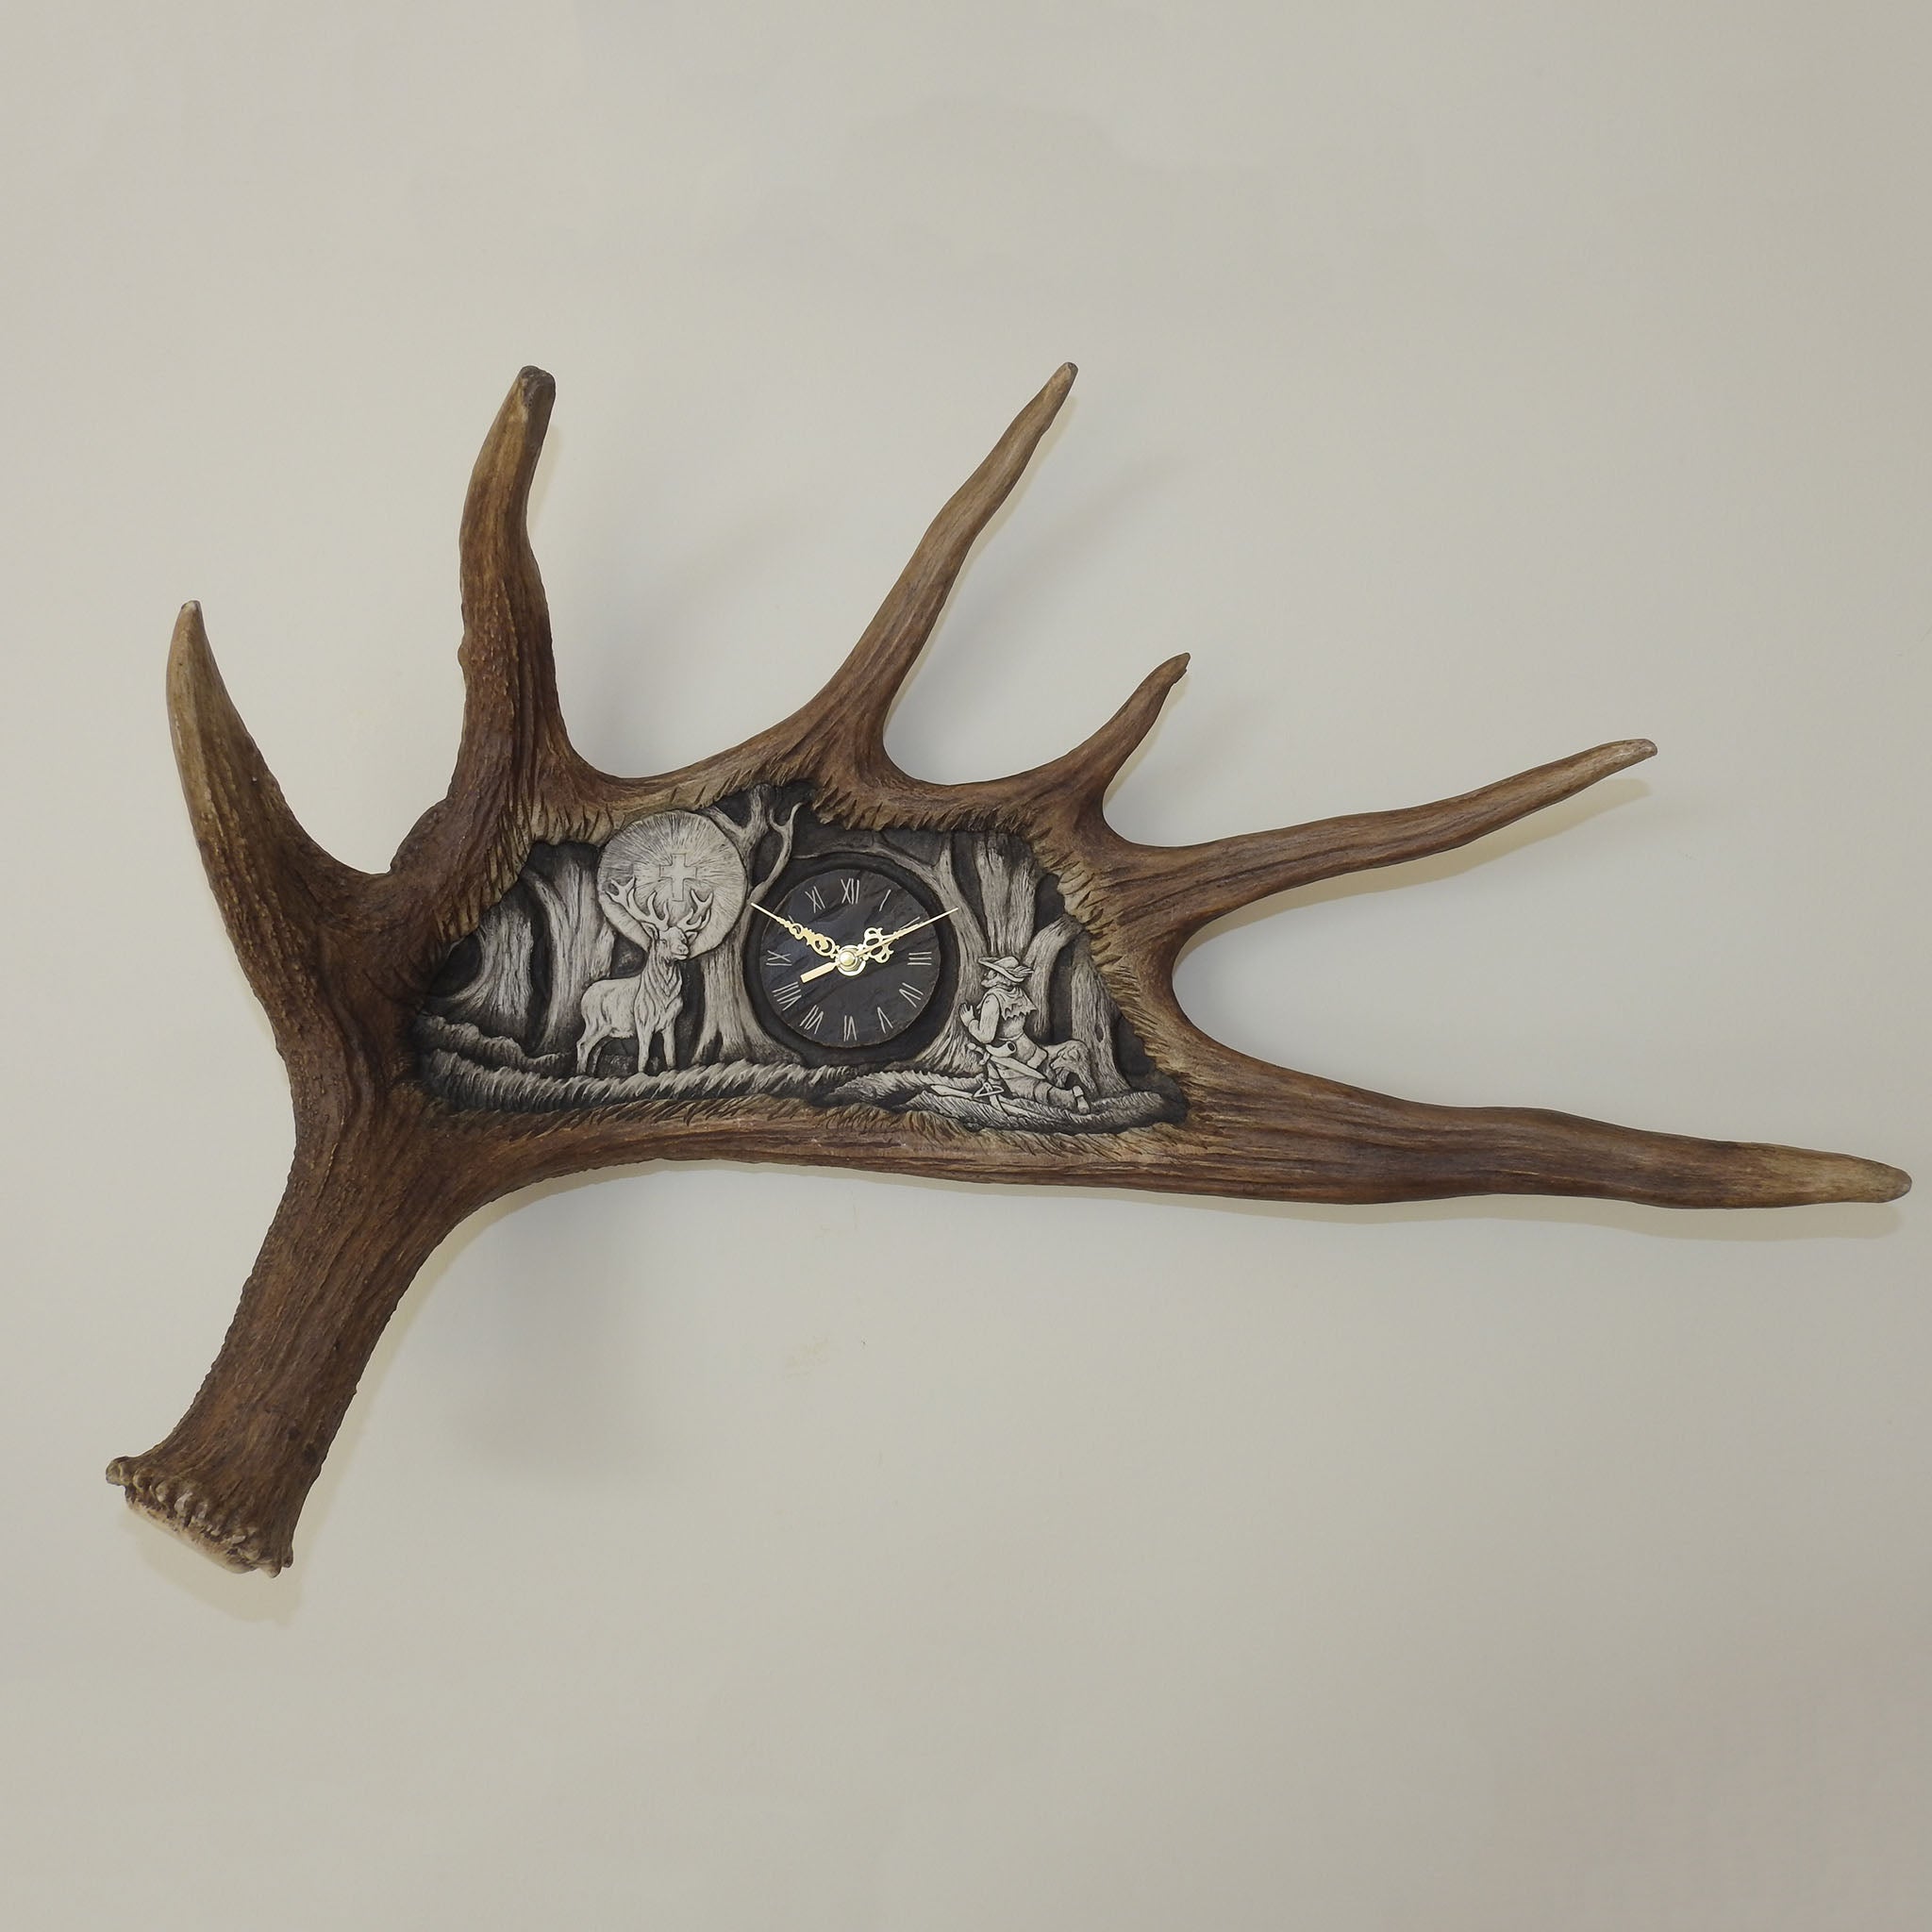 Real moose antler carving.